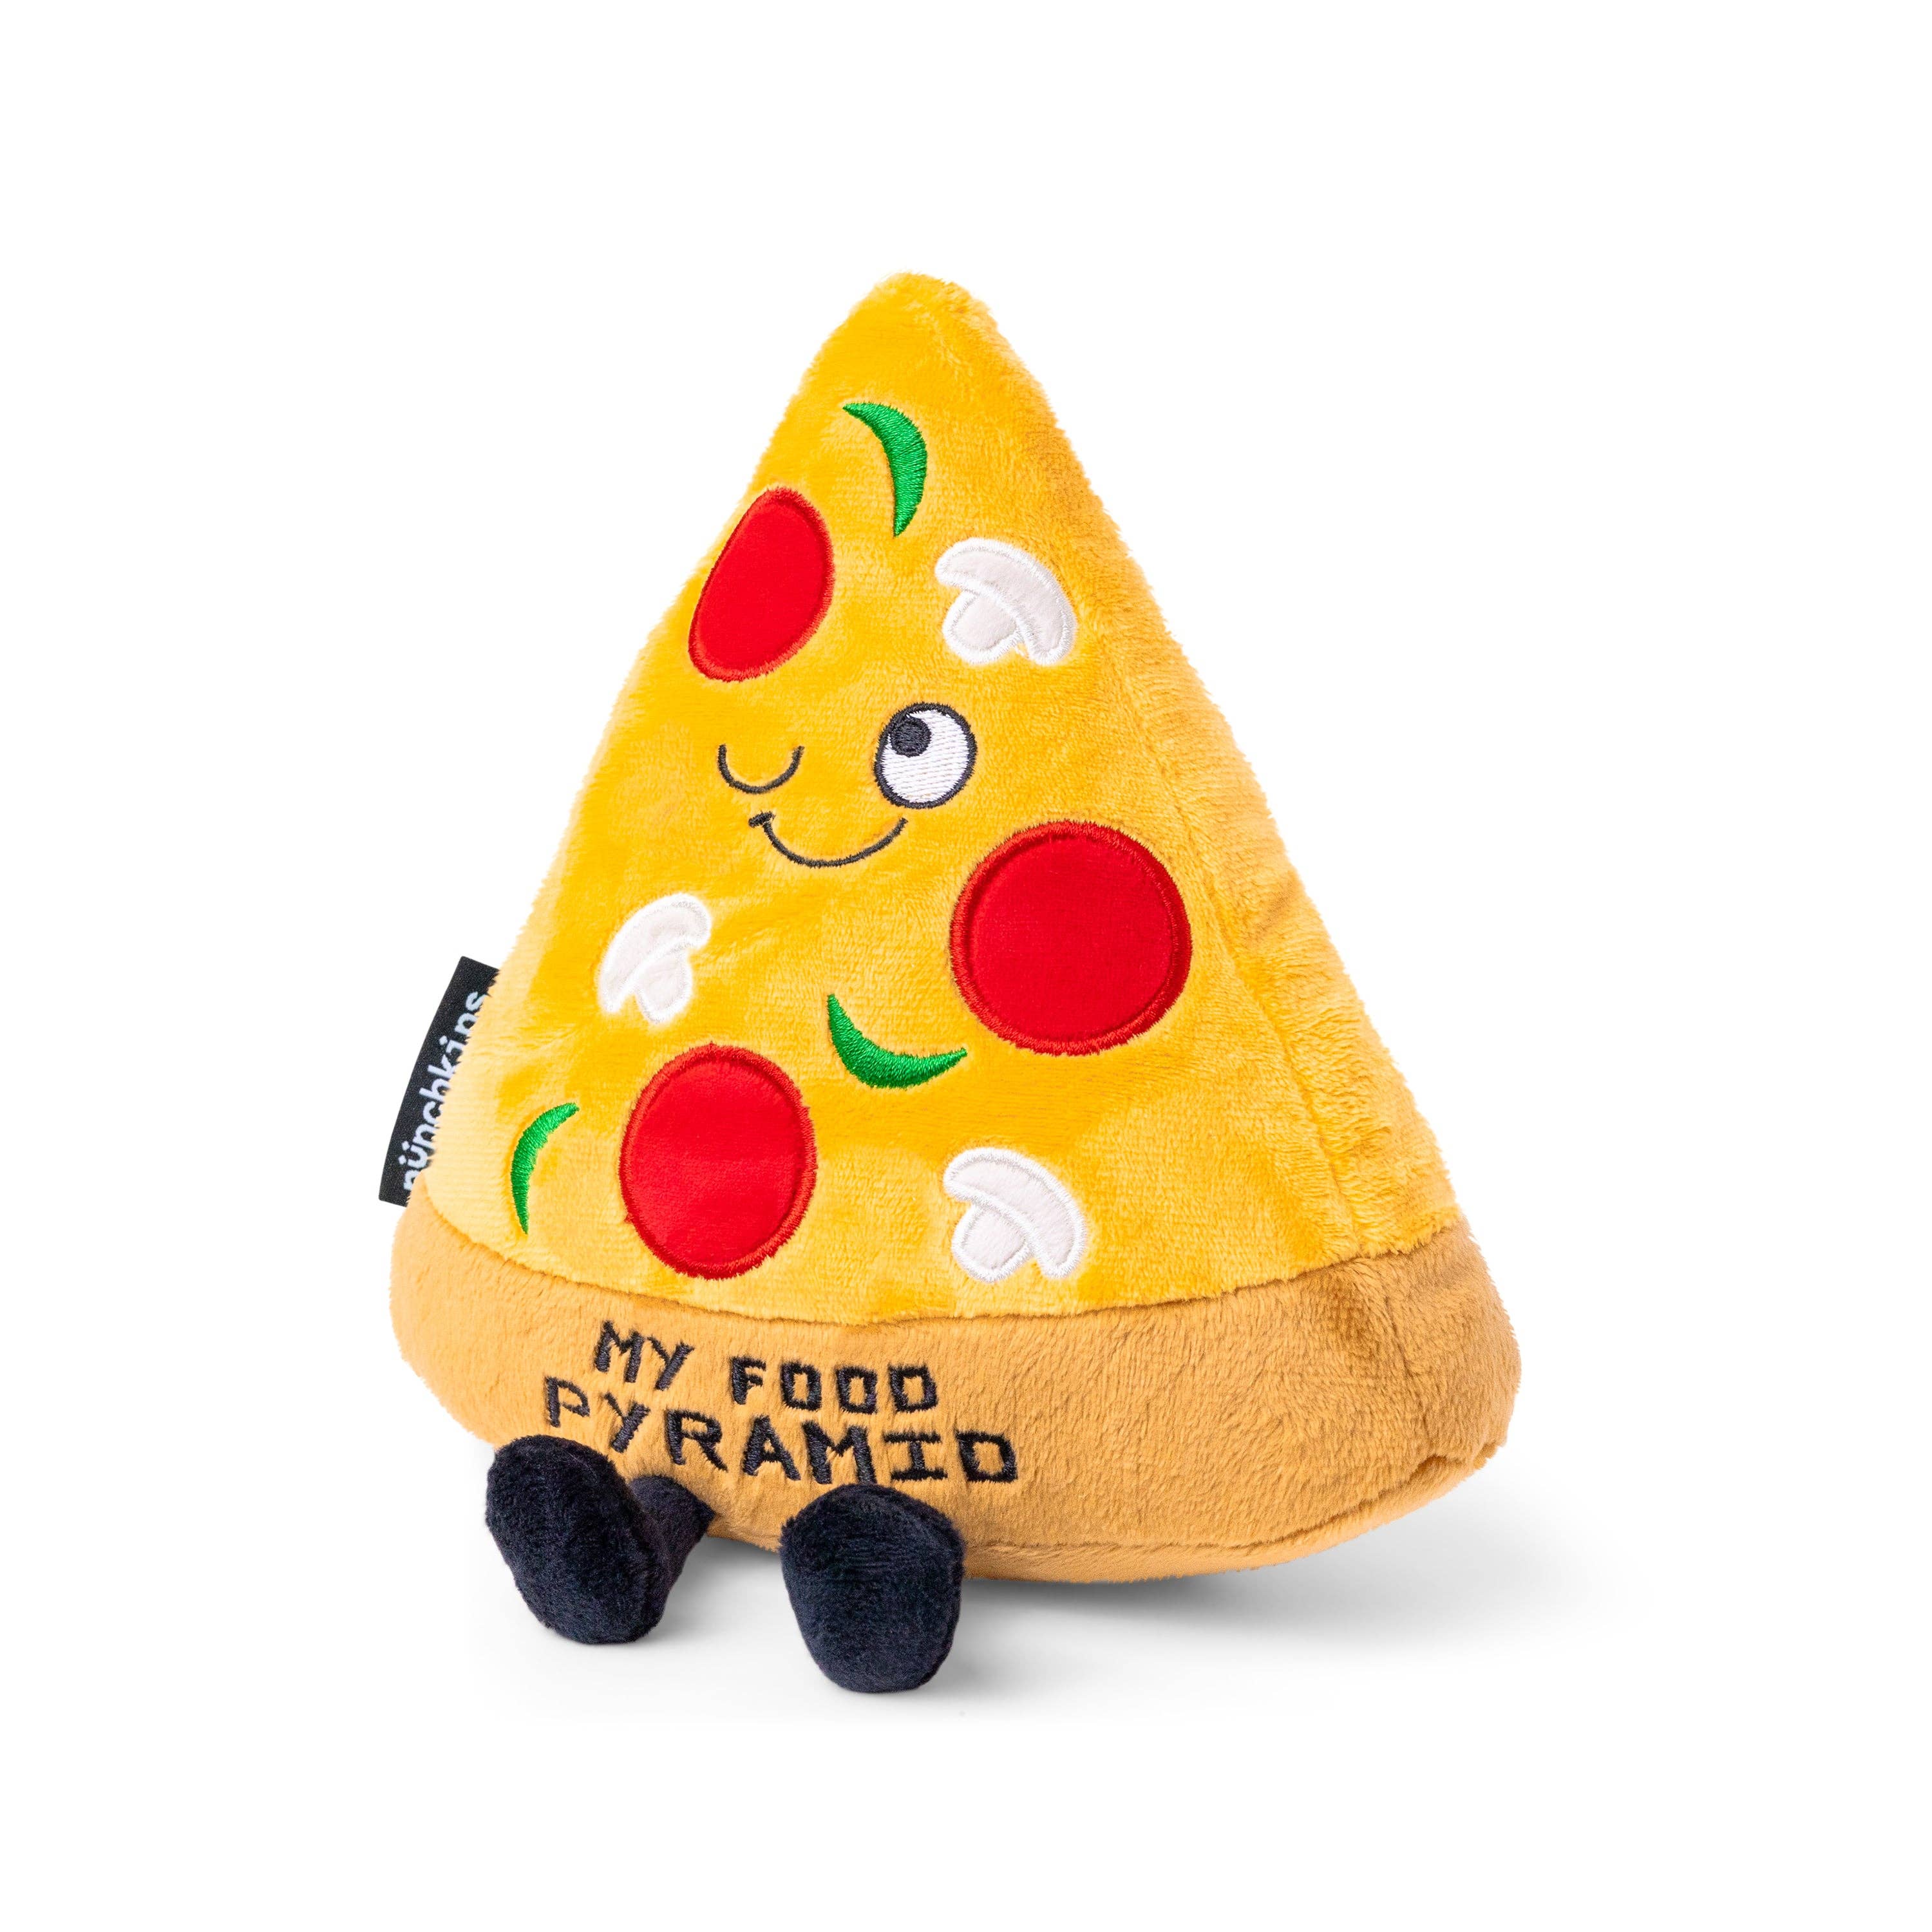 Punchkins "My Food Pyramid" Novelty Plush Pizza Gift Kawaii Gifts 850042202272